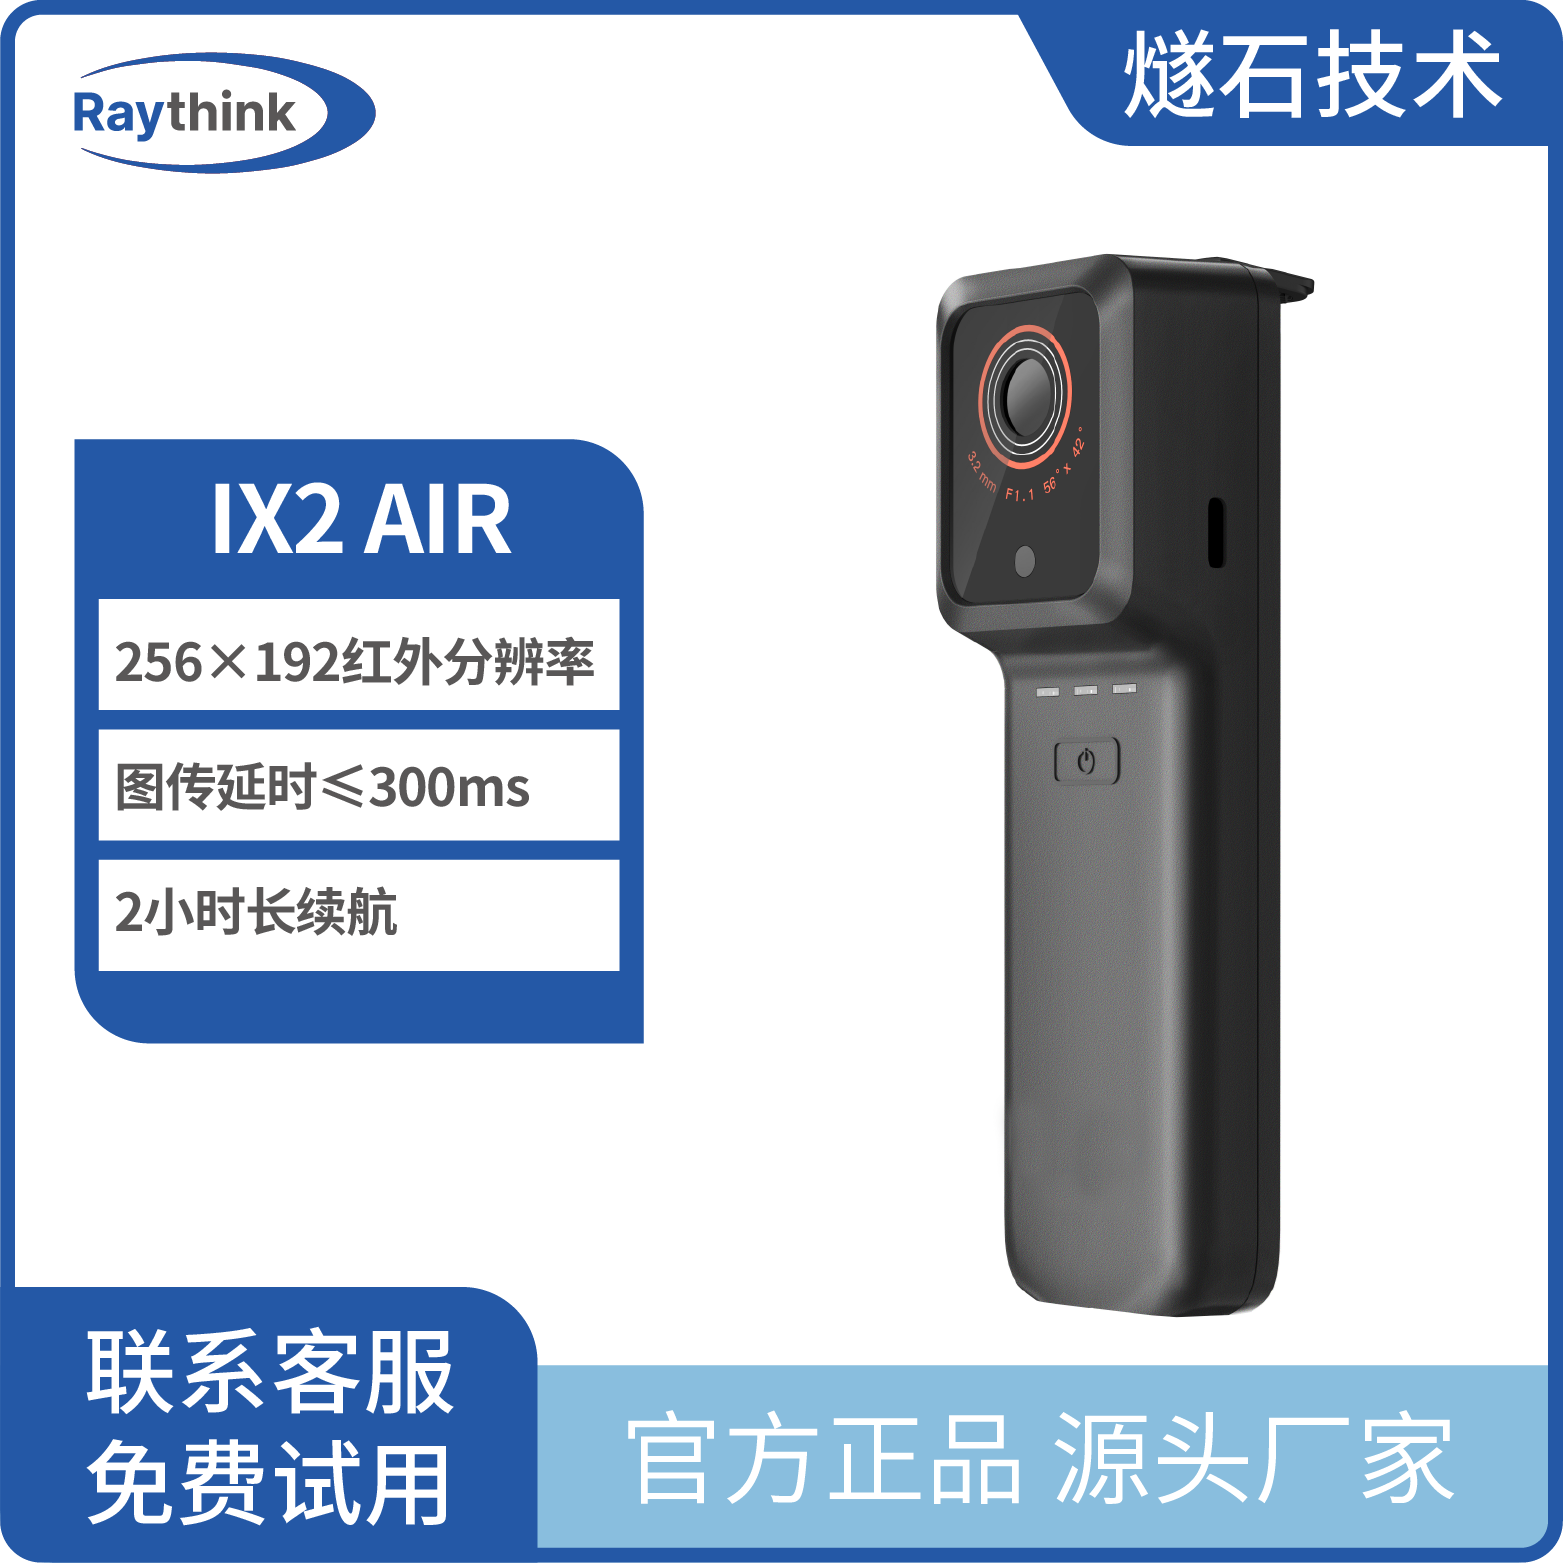 IX2 AIR 无线手机红外热像仪